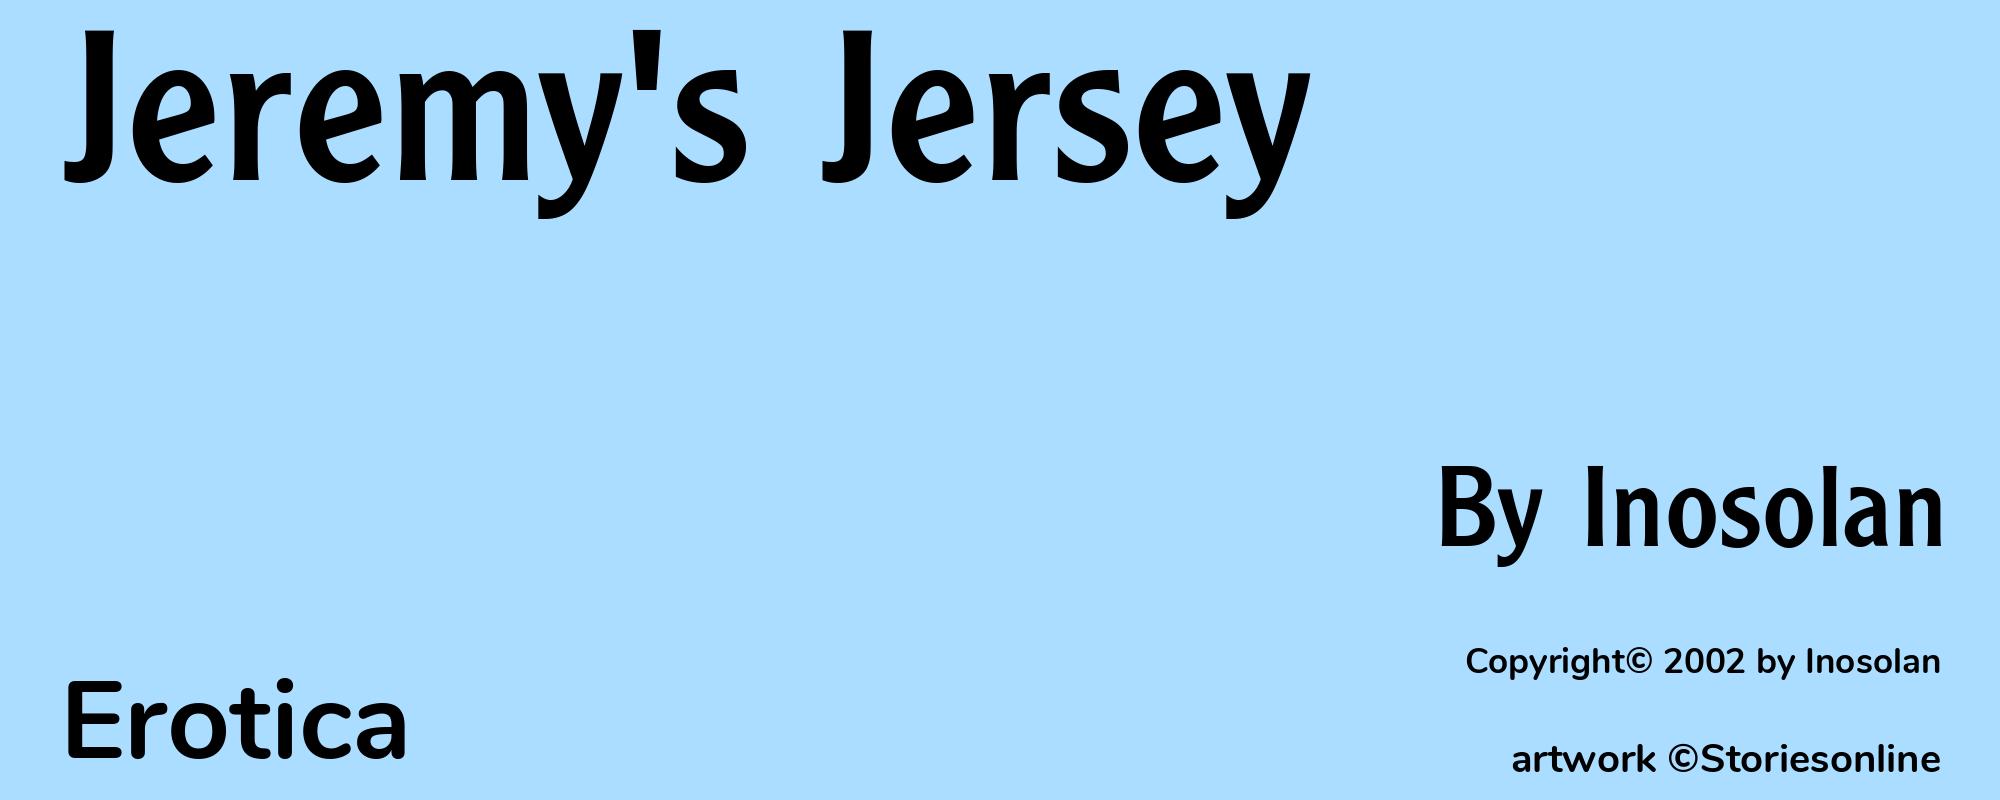 Jeremy's Jersey - Cover